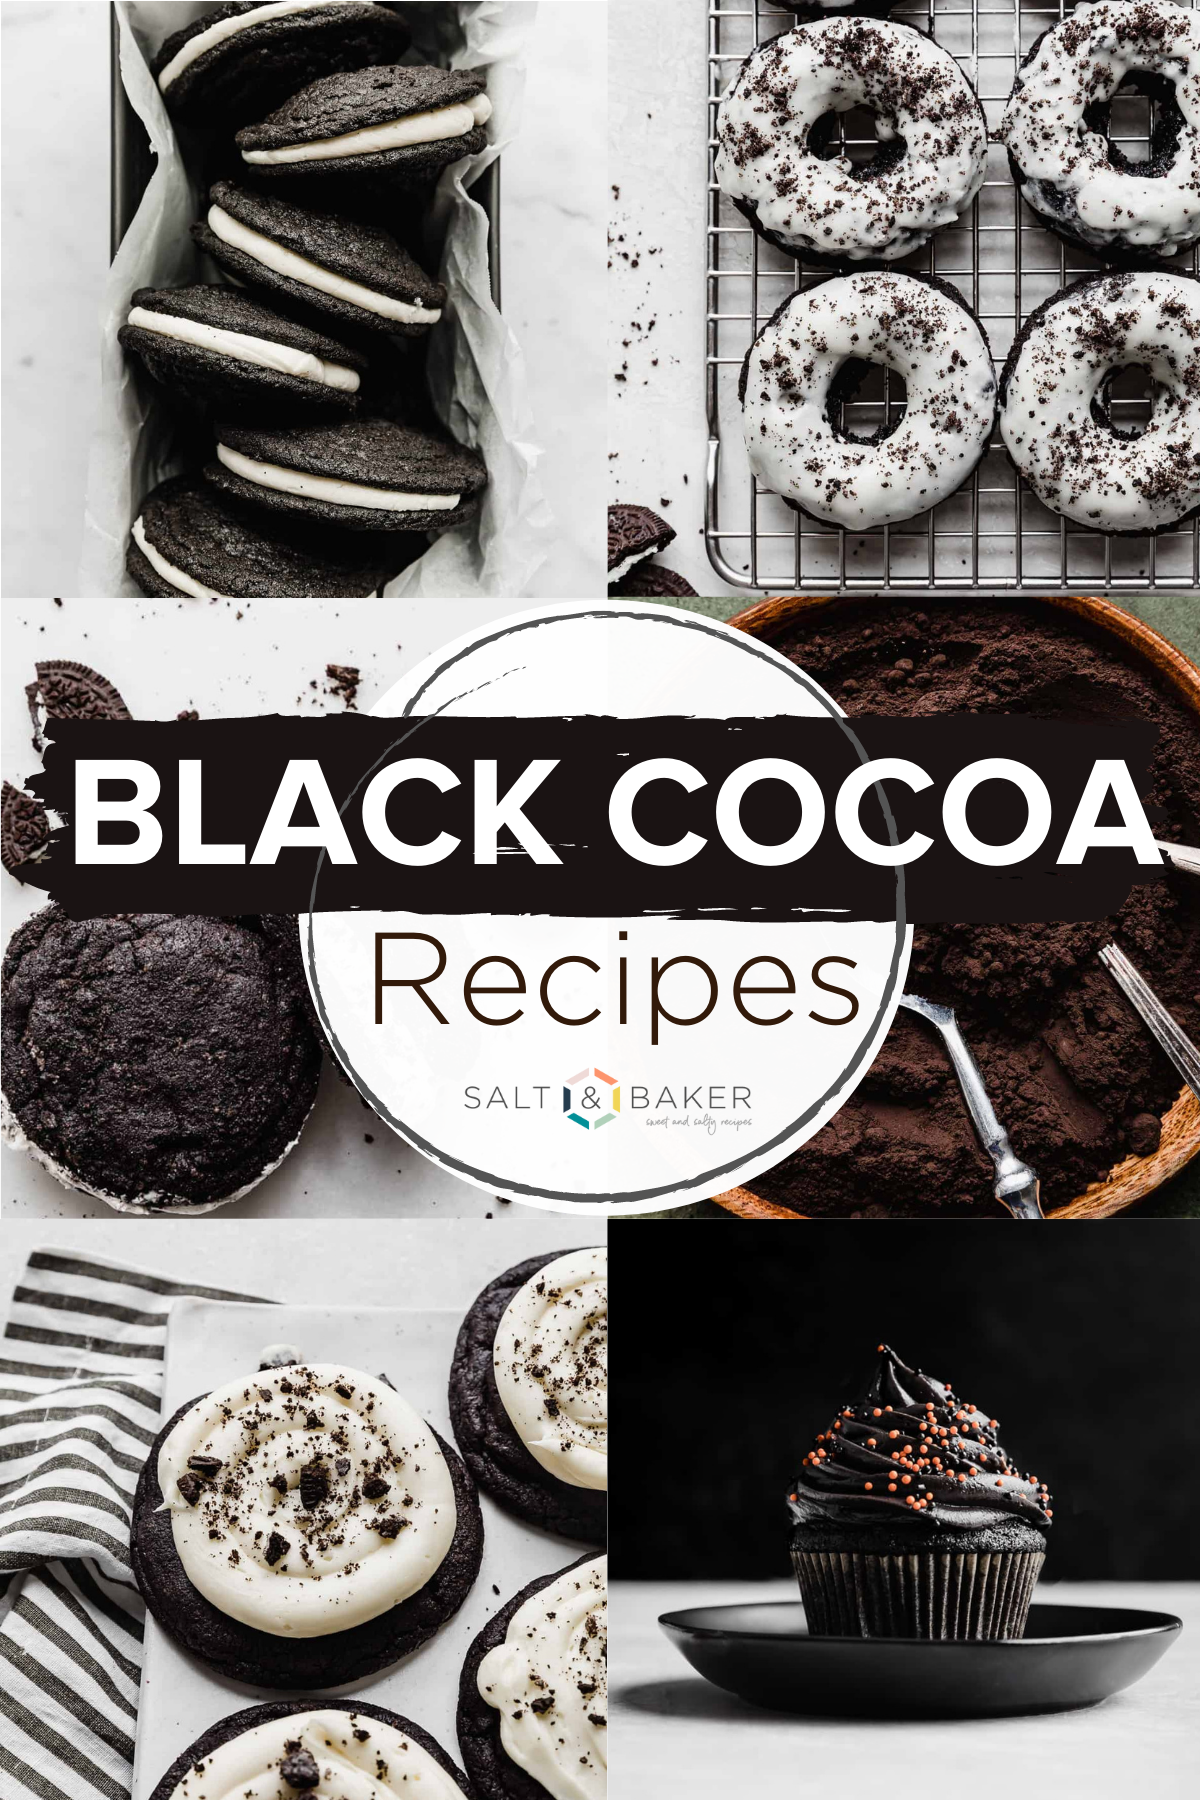 Black Cocoa Powder Recipes - Salt & Baker